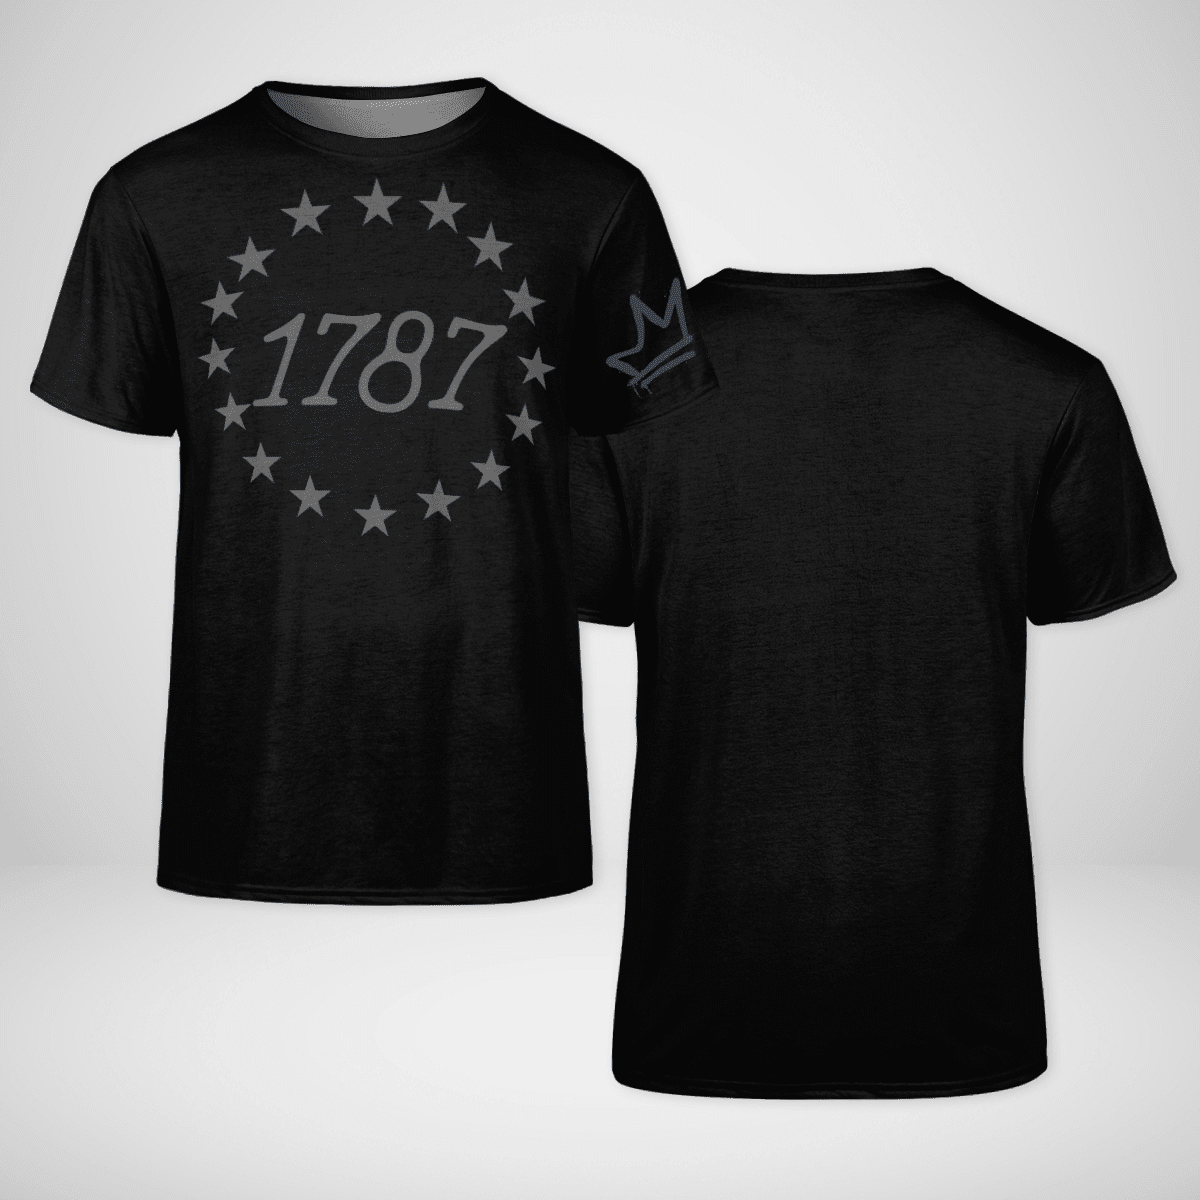 1787 American Pride Shirt